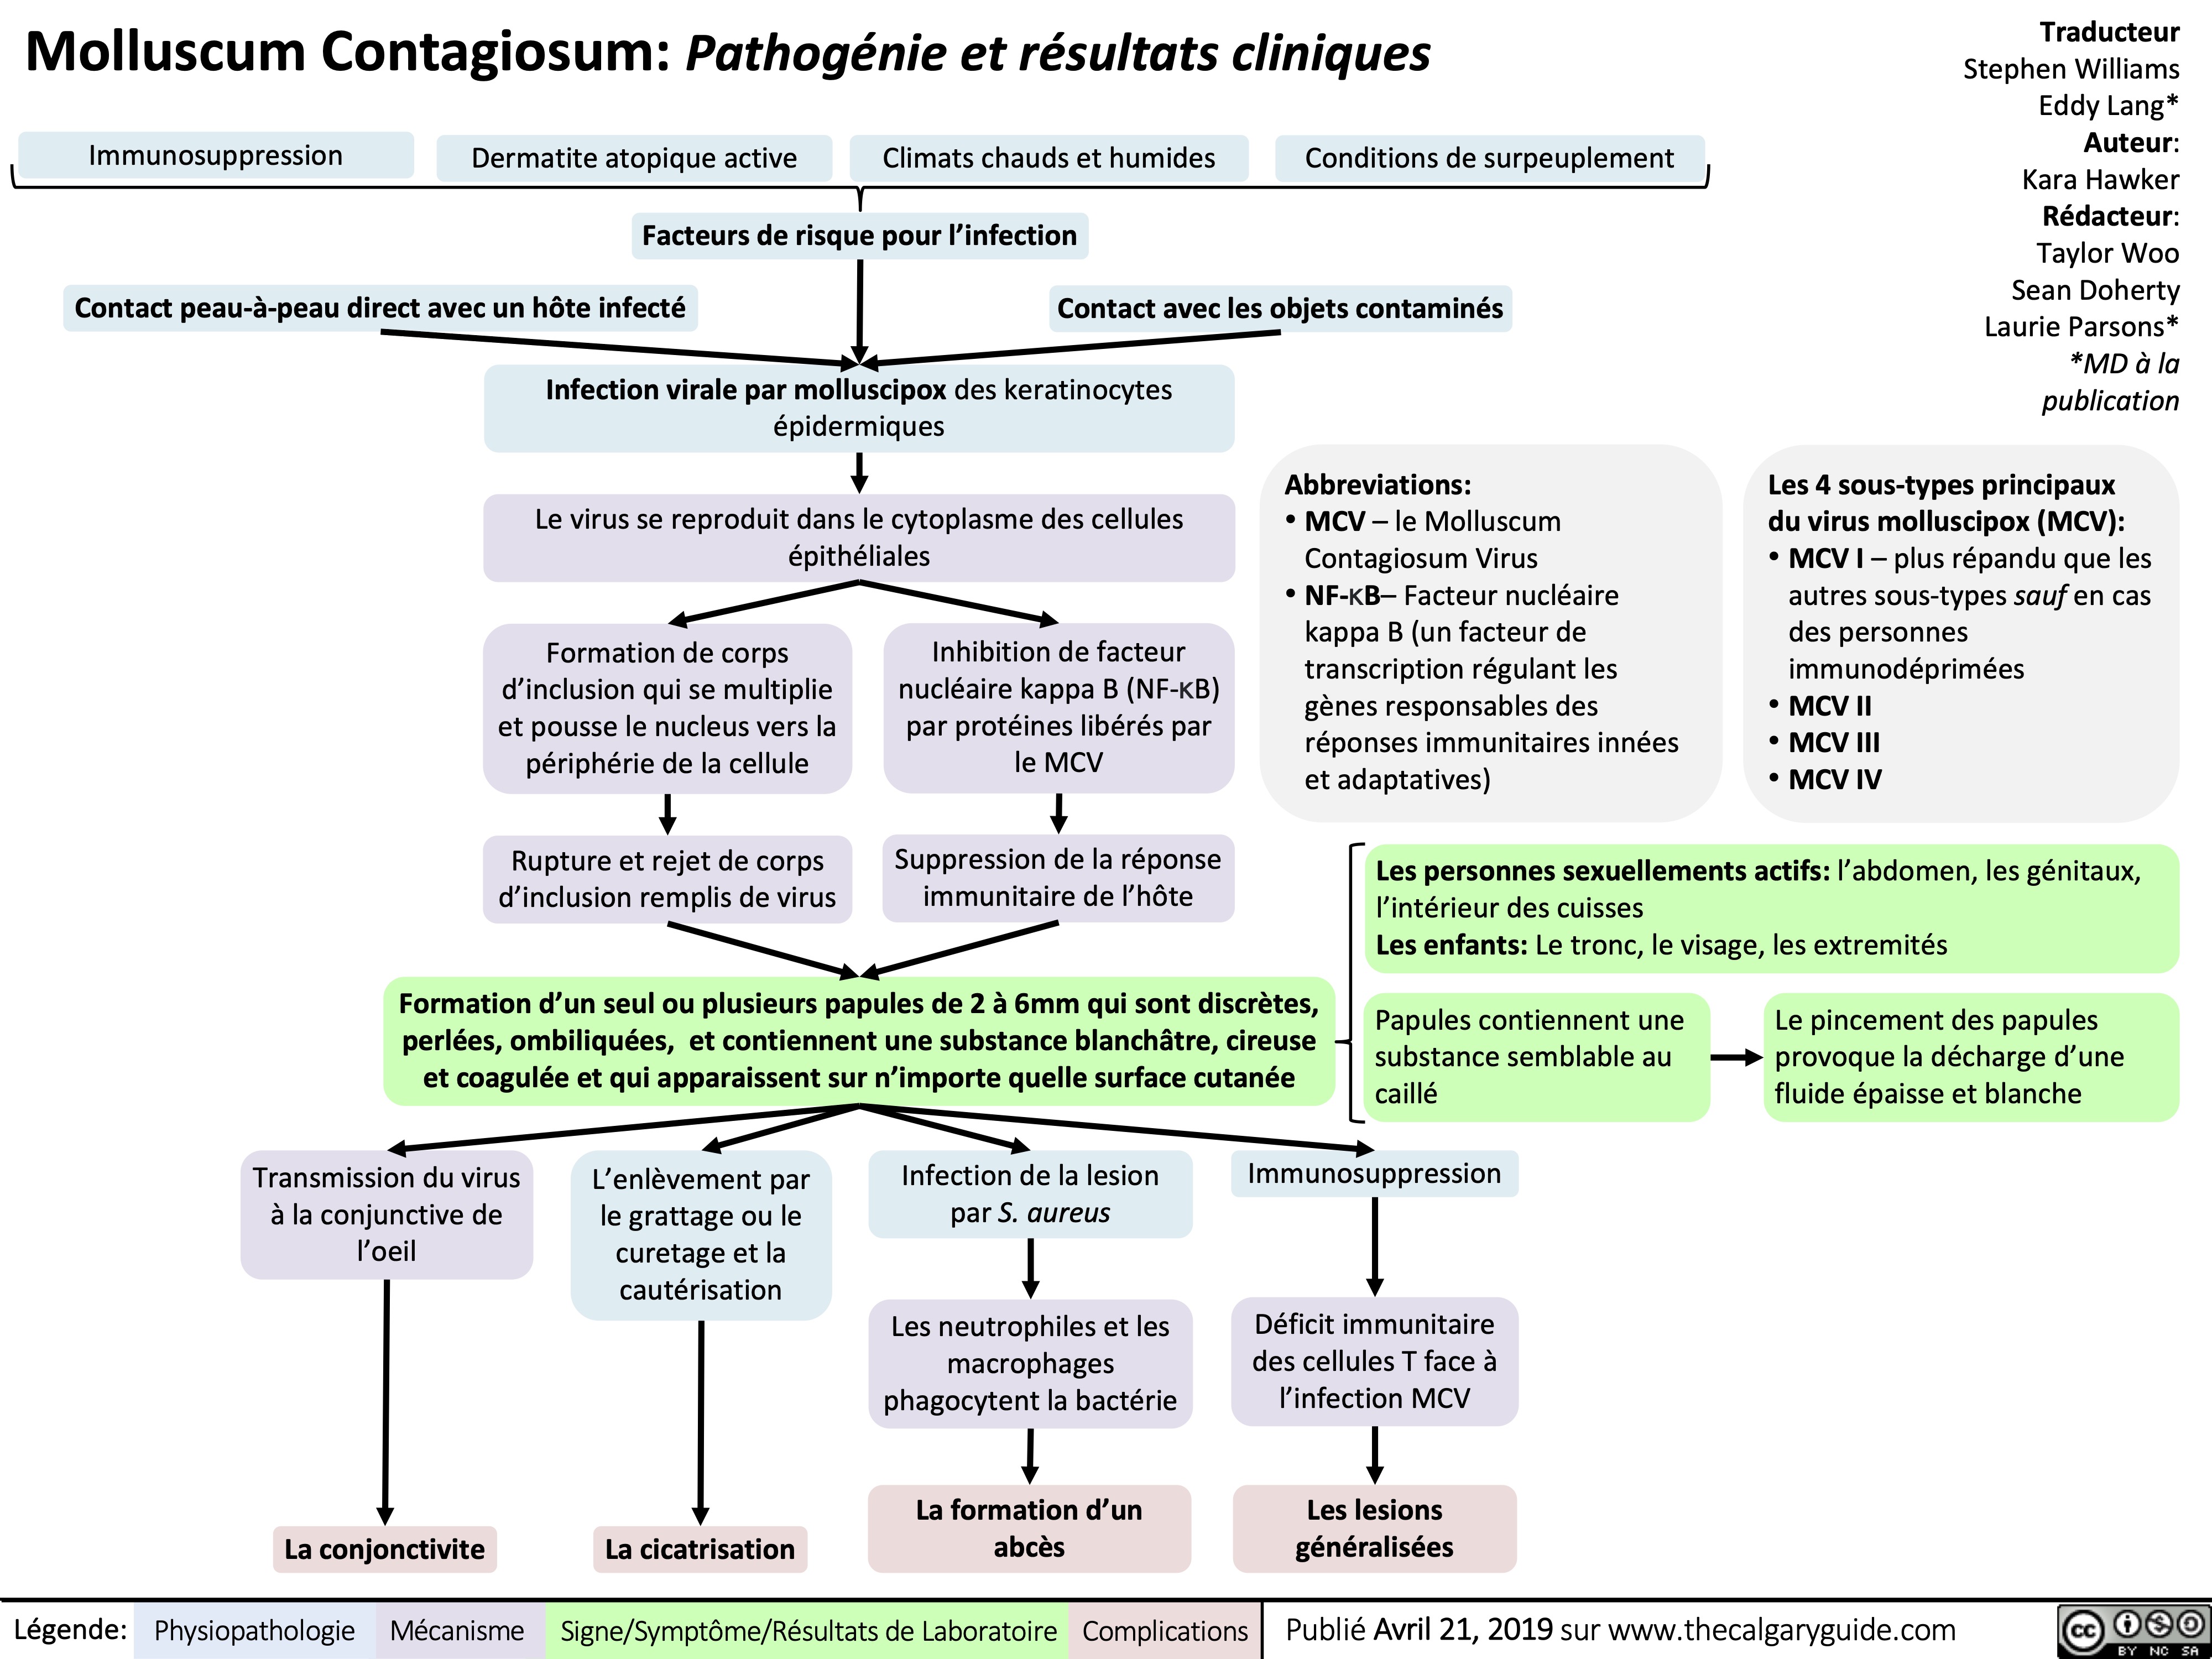 Molluscum Contagiosum: Pathogénie et résultats cliniques